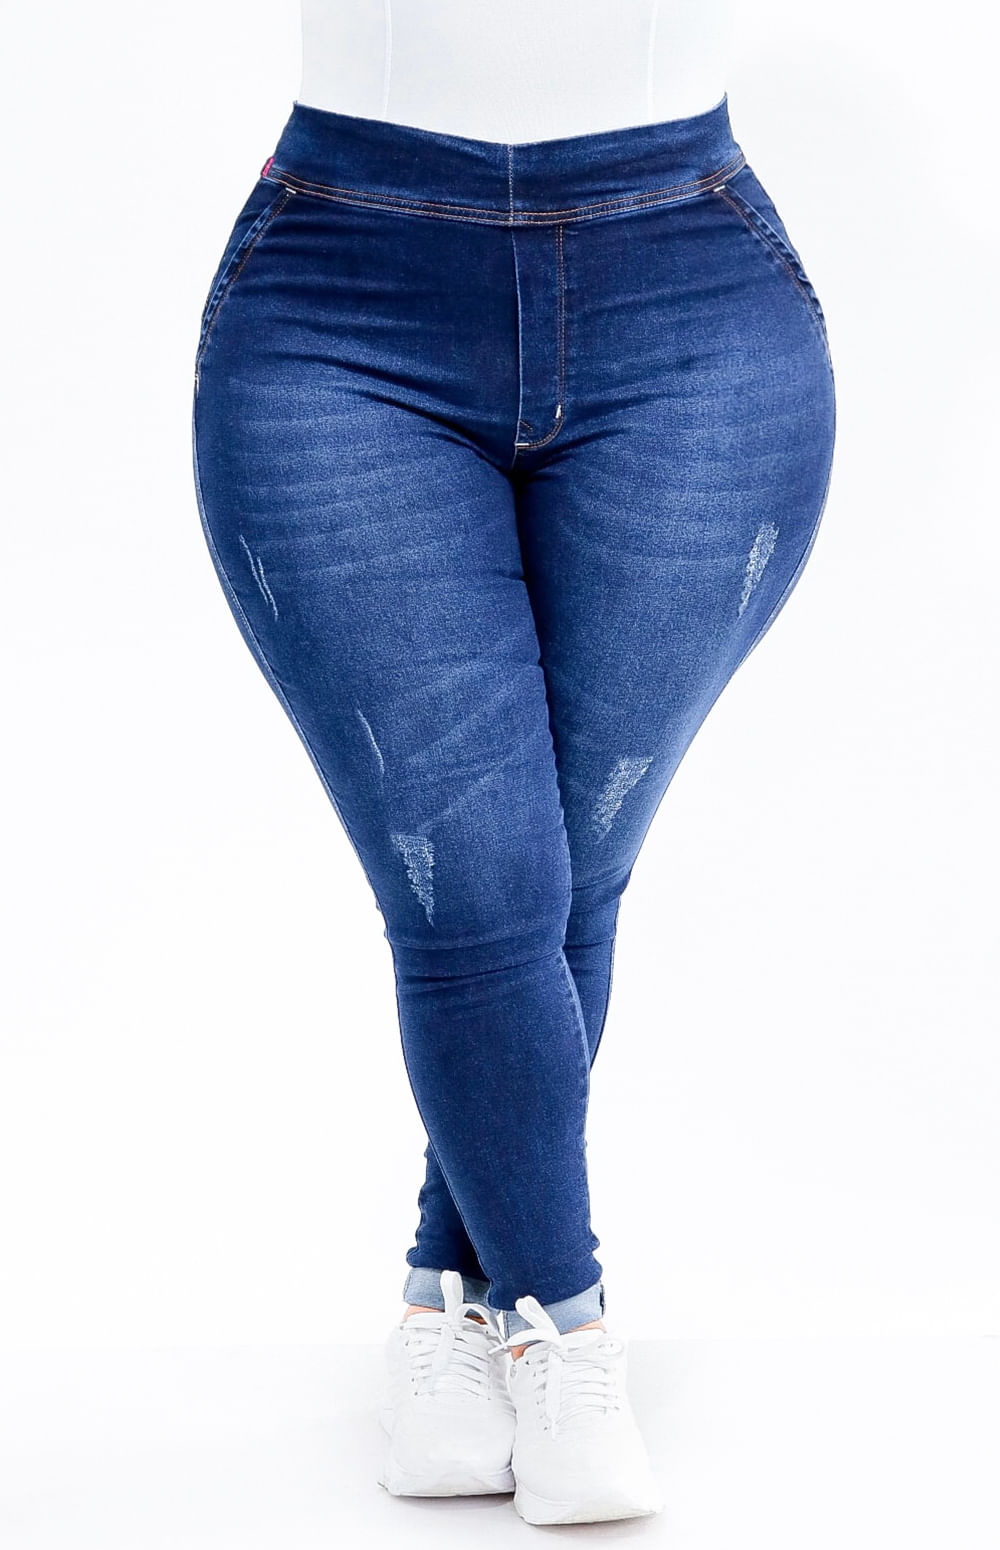 Calça Jeans Plus Size - Extreme Power Comfy Clássica